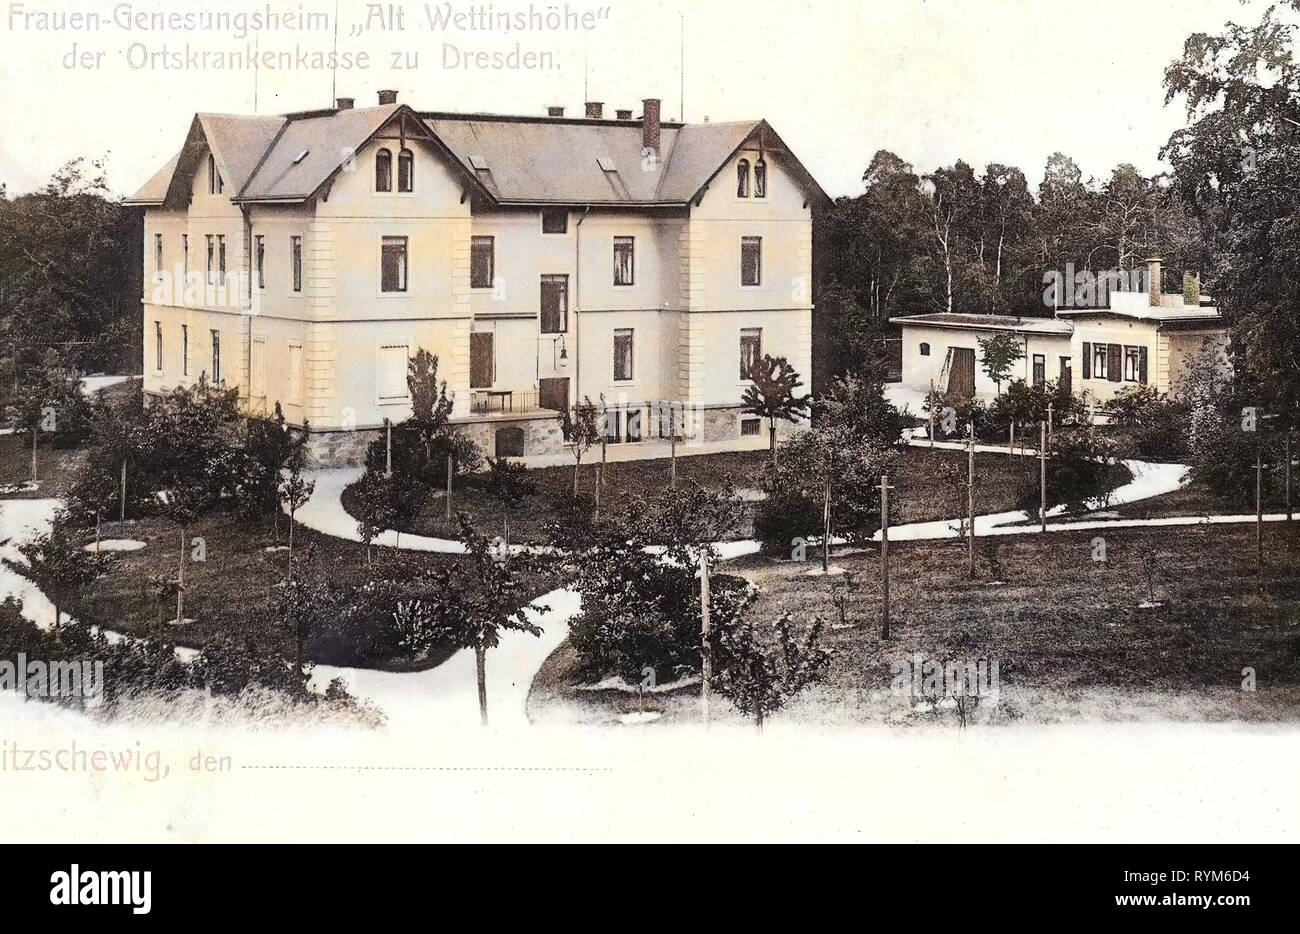 Frauen-Genesungsheim Alt-Wettinhöhe, 1903, Landkreis Meißen, Zitzschewig, Frauengenesungsheim Alt Wettinhöhe, Germany Stock Photo